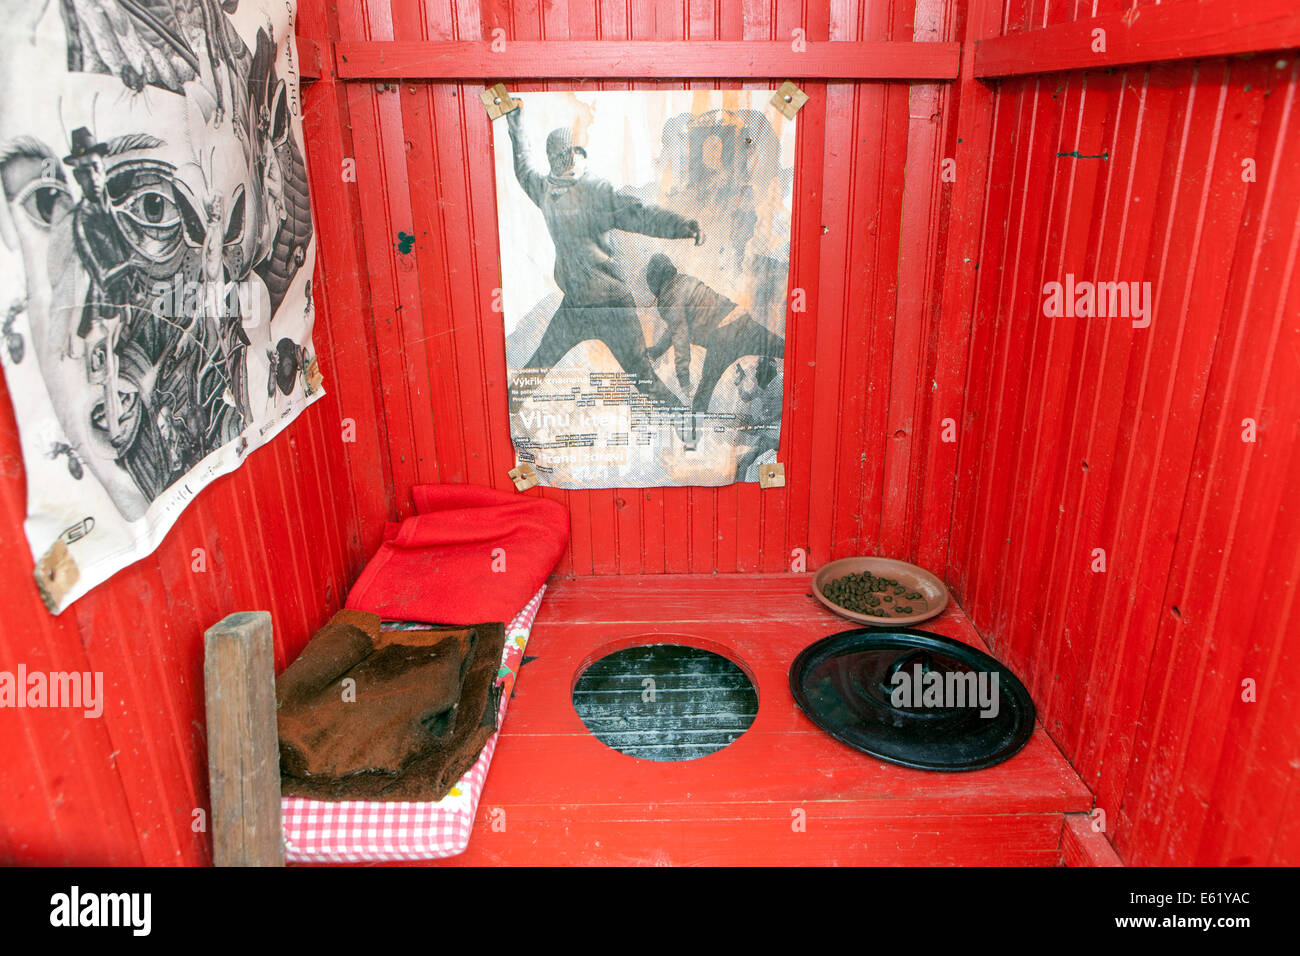 All'interno di rosso attico, wc casa decorata con poster anarchici Repubblica Ceca rurale loo Foto Stock